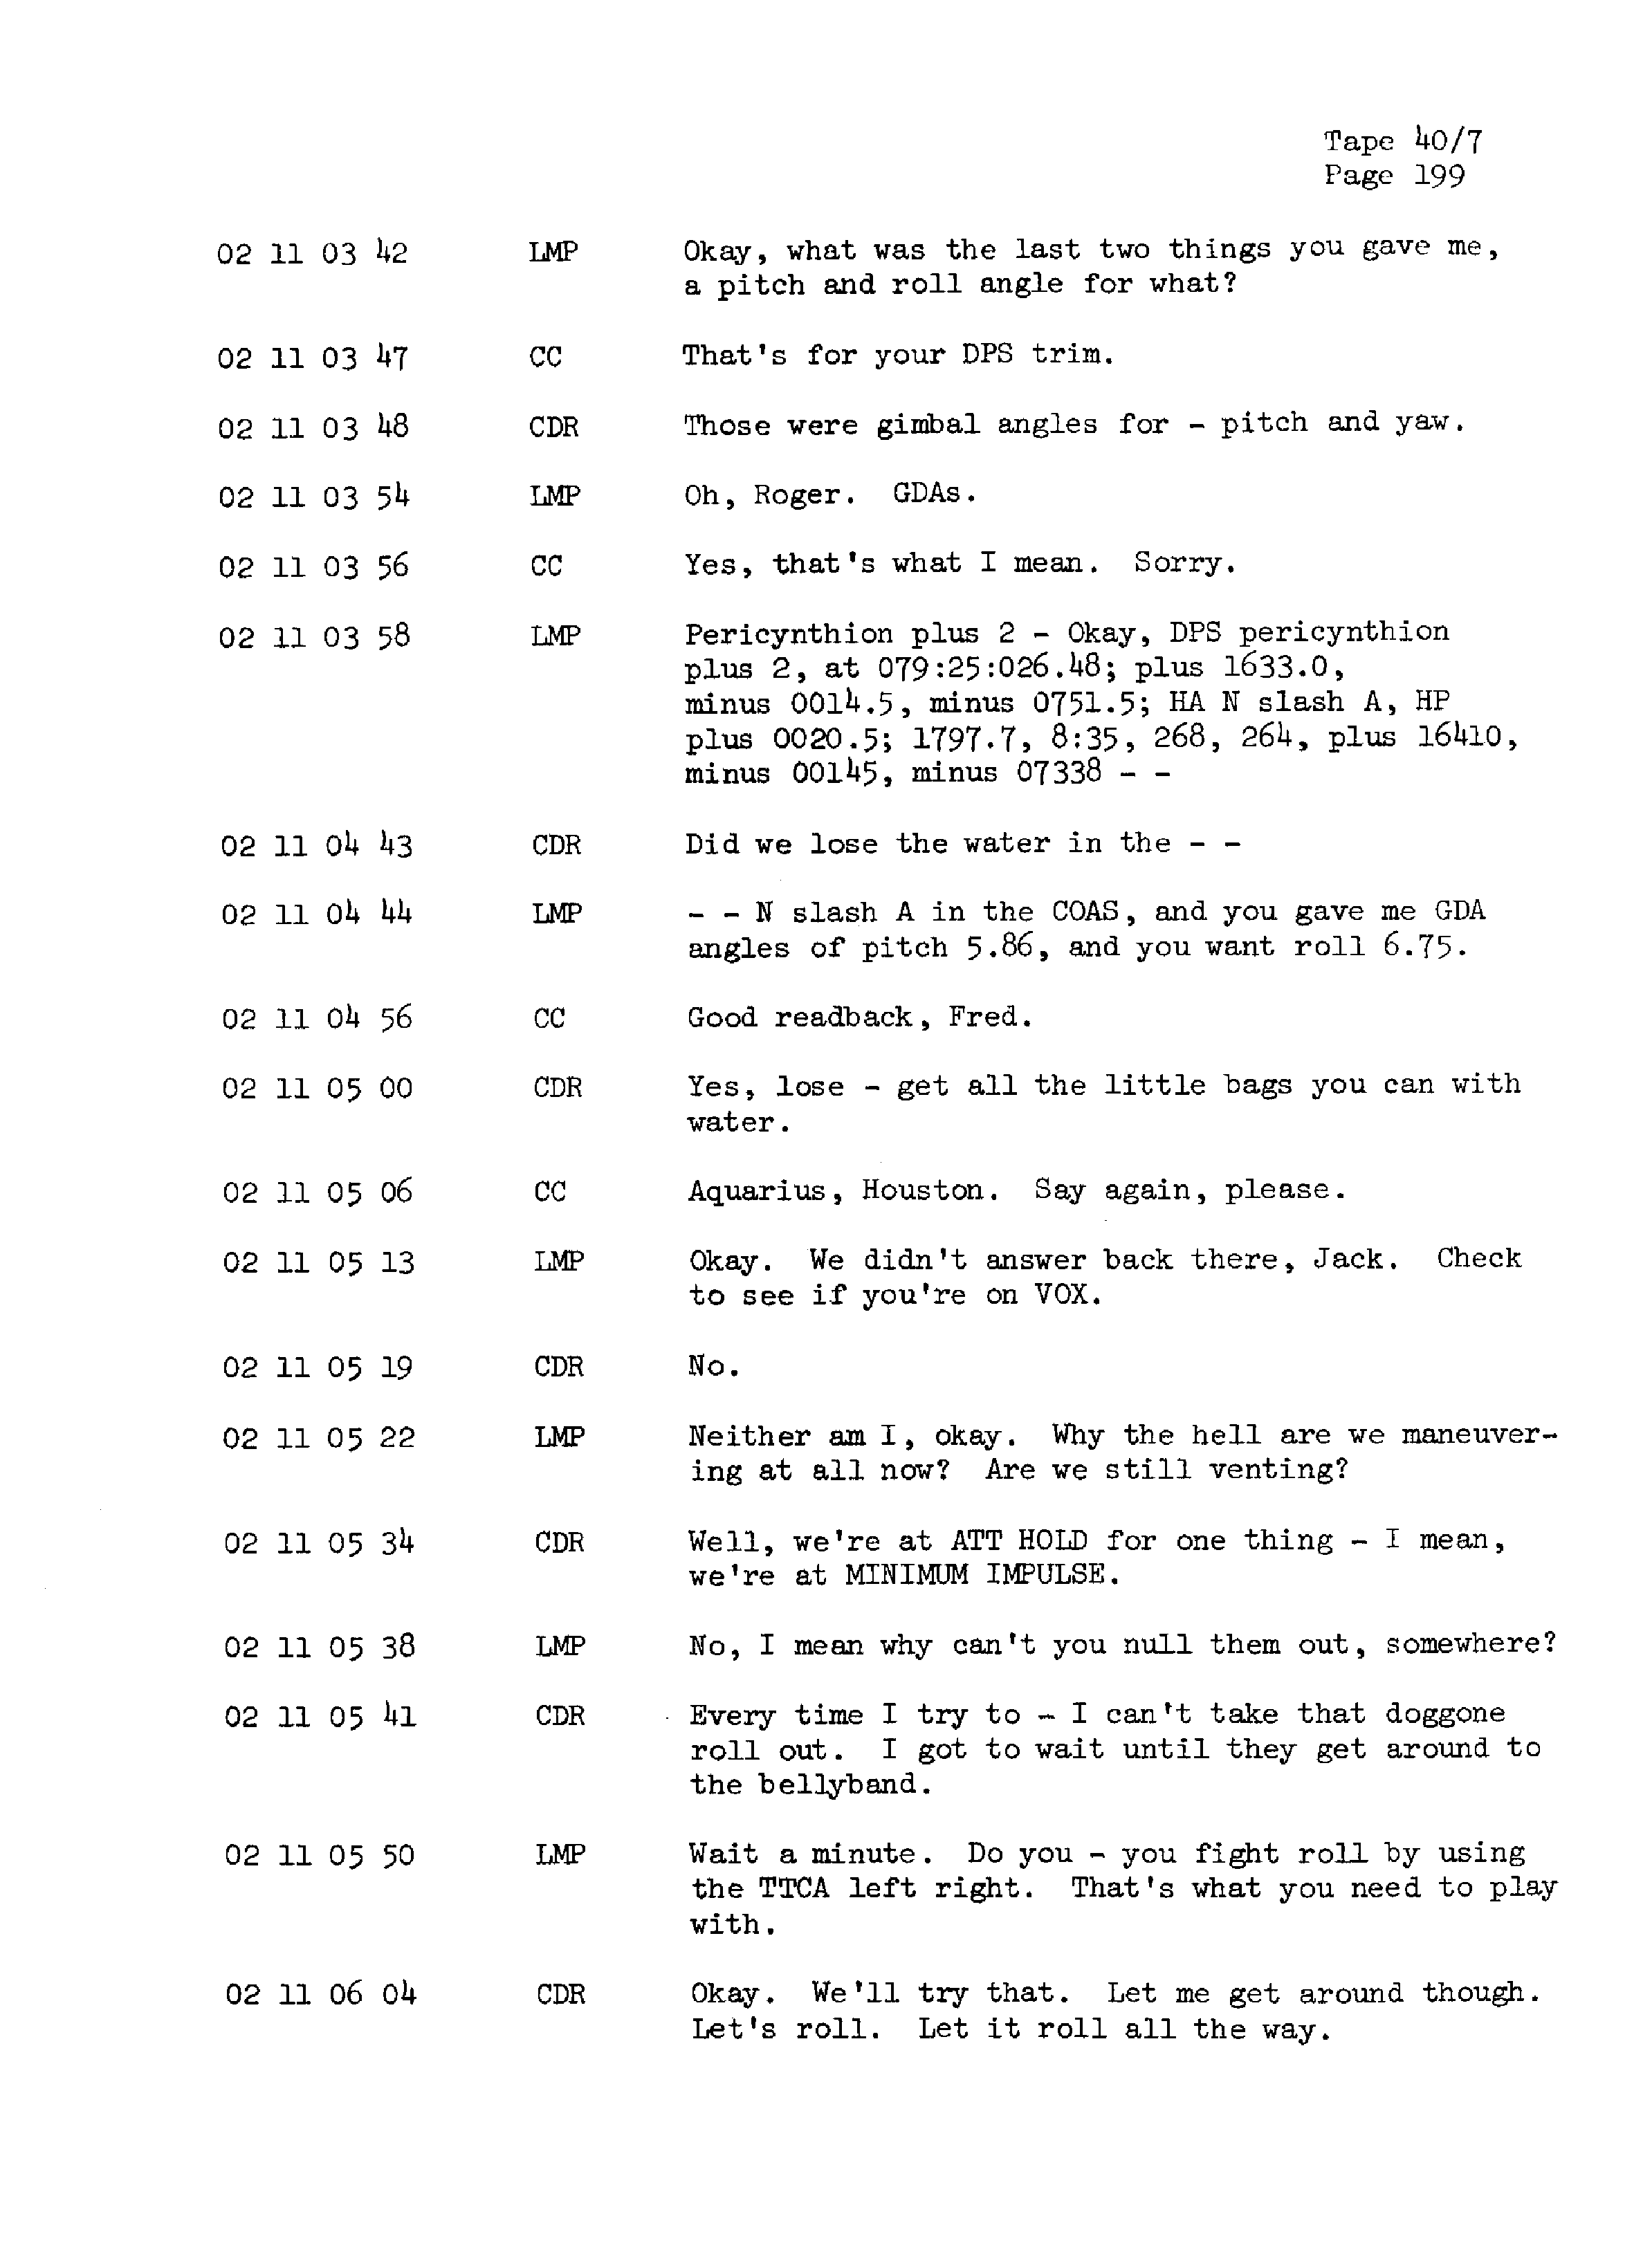 Page 206 of Apollo 13’s original transcript